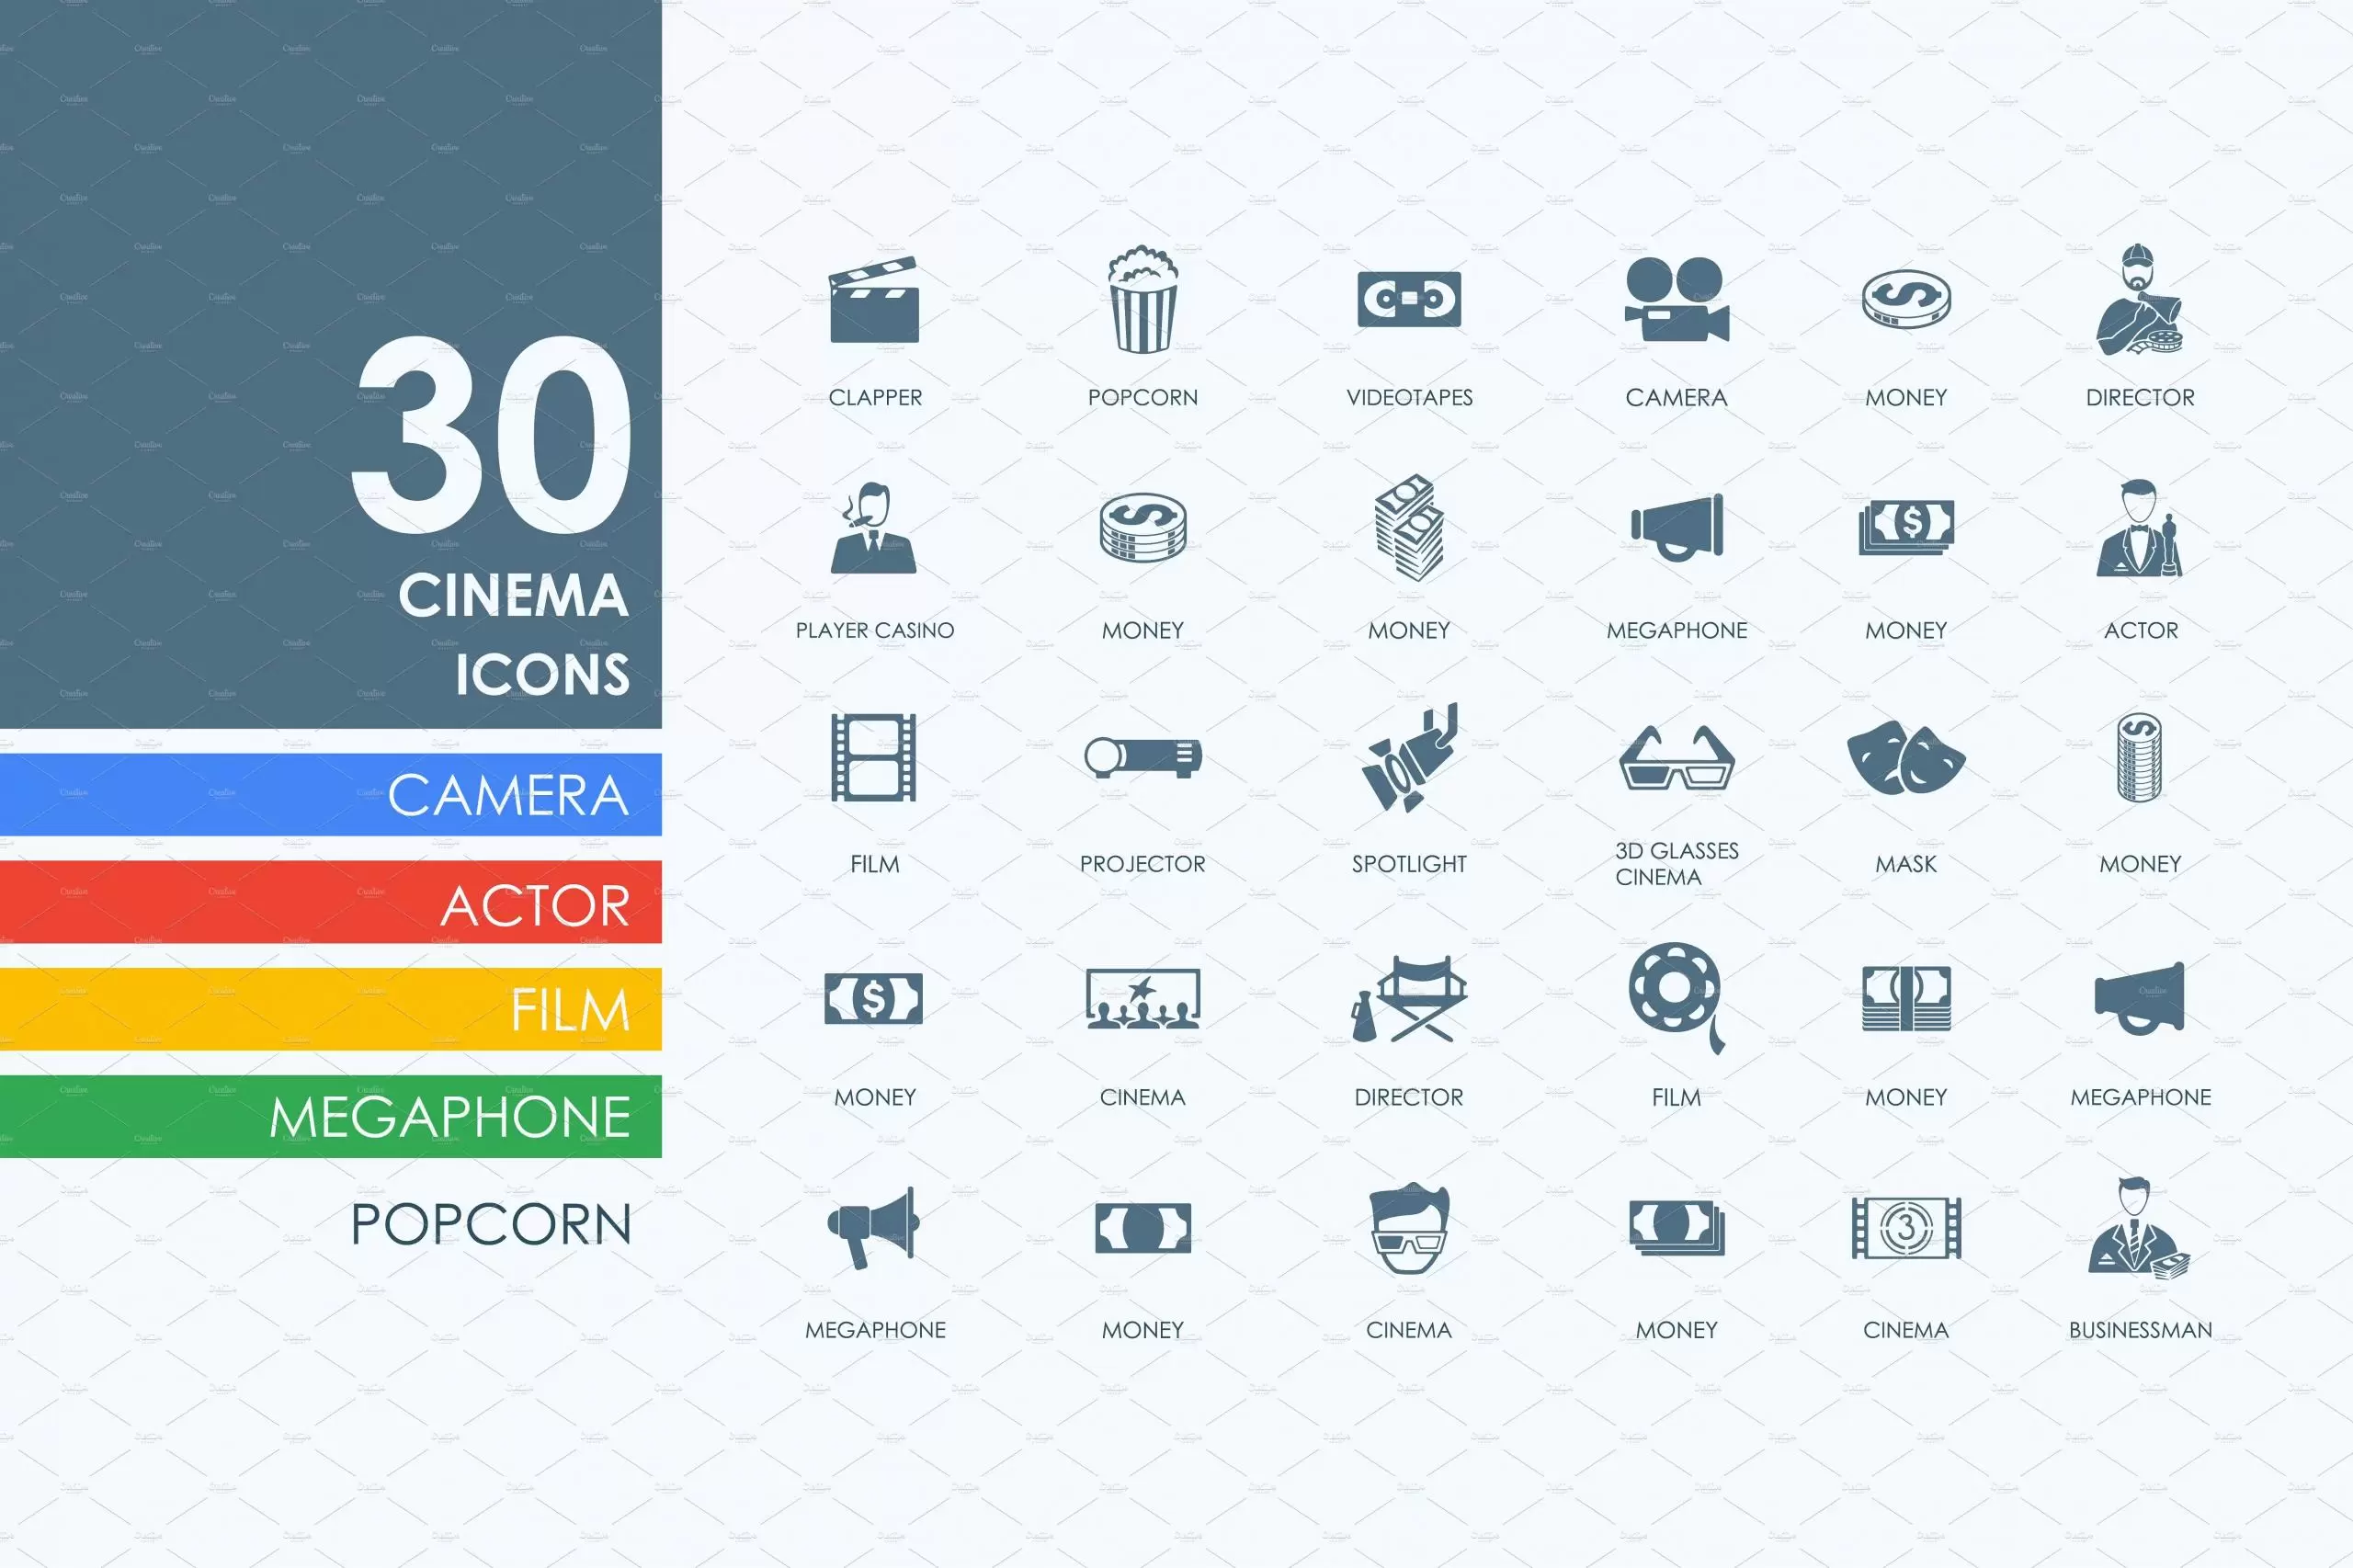 电影院图标素材 30 cinema icons插图